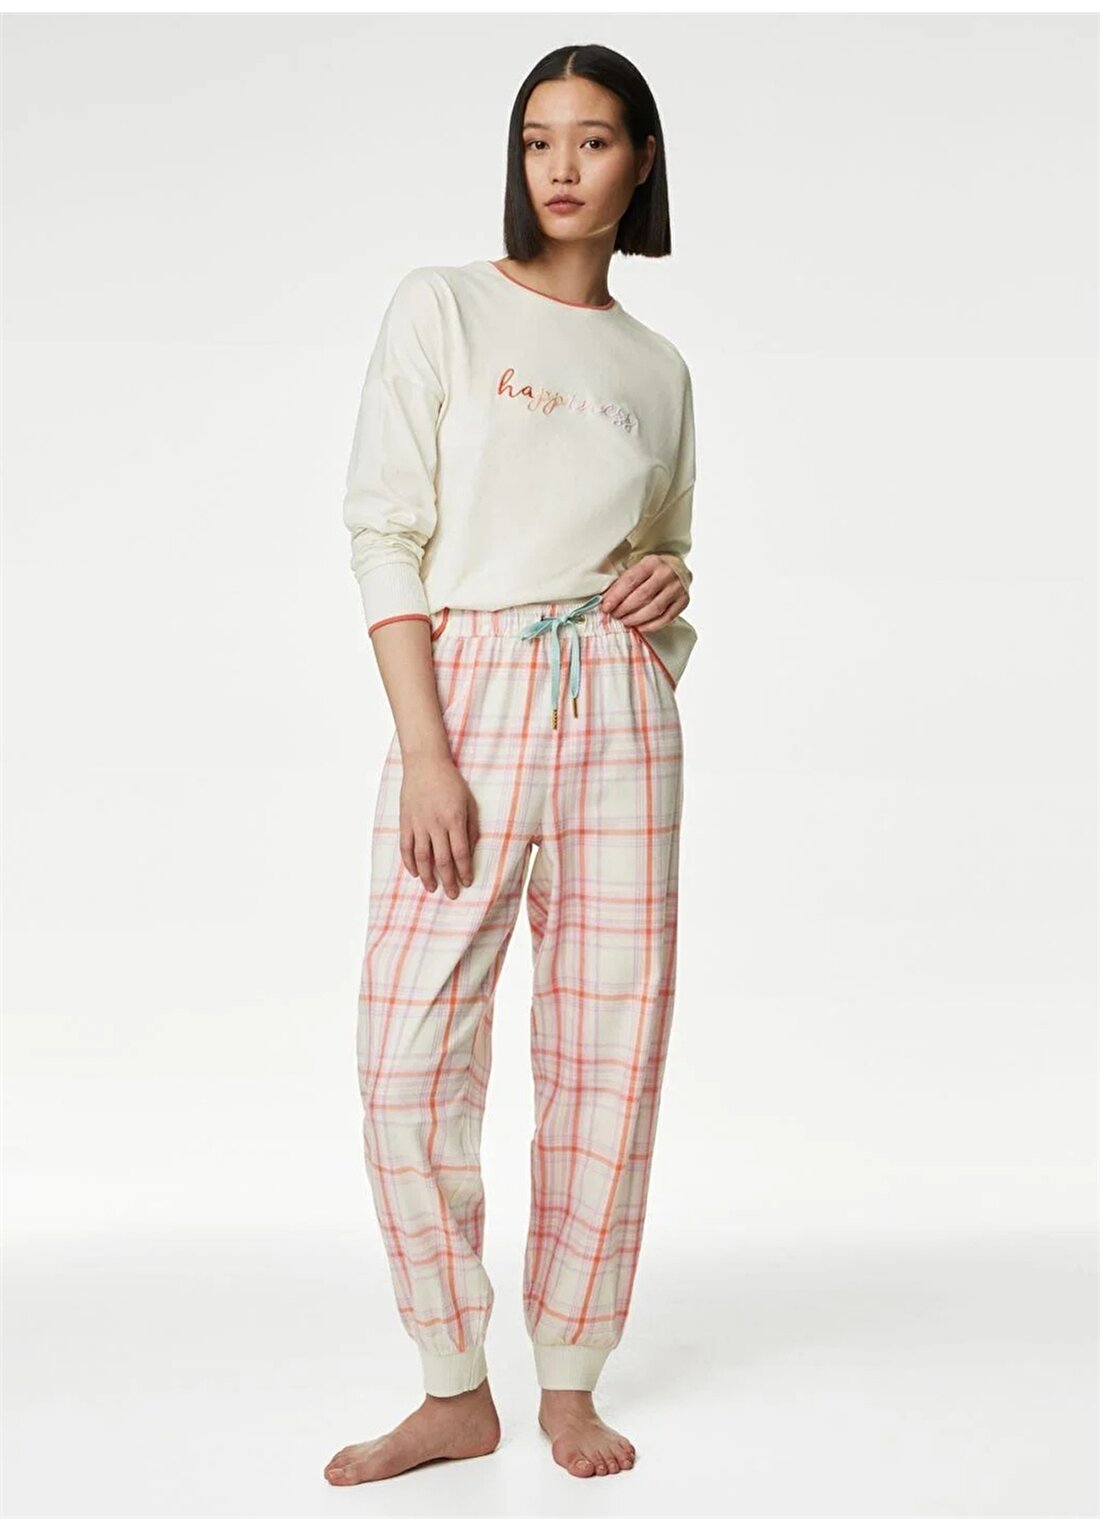 Marks & Spencer Düz Fildişi Kadın Pijama Takımı 1445J